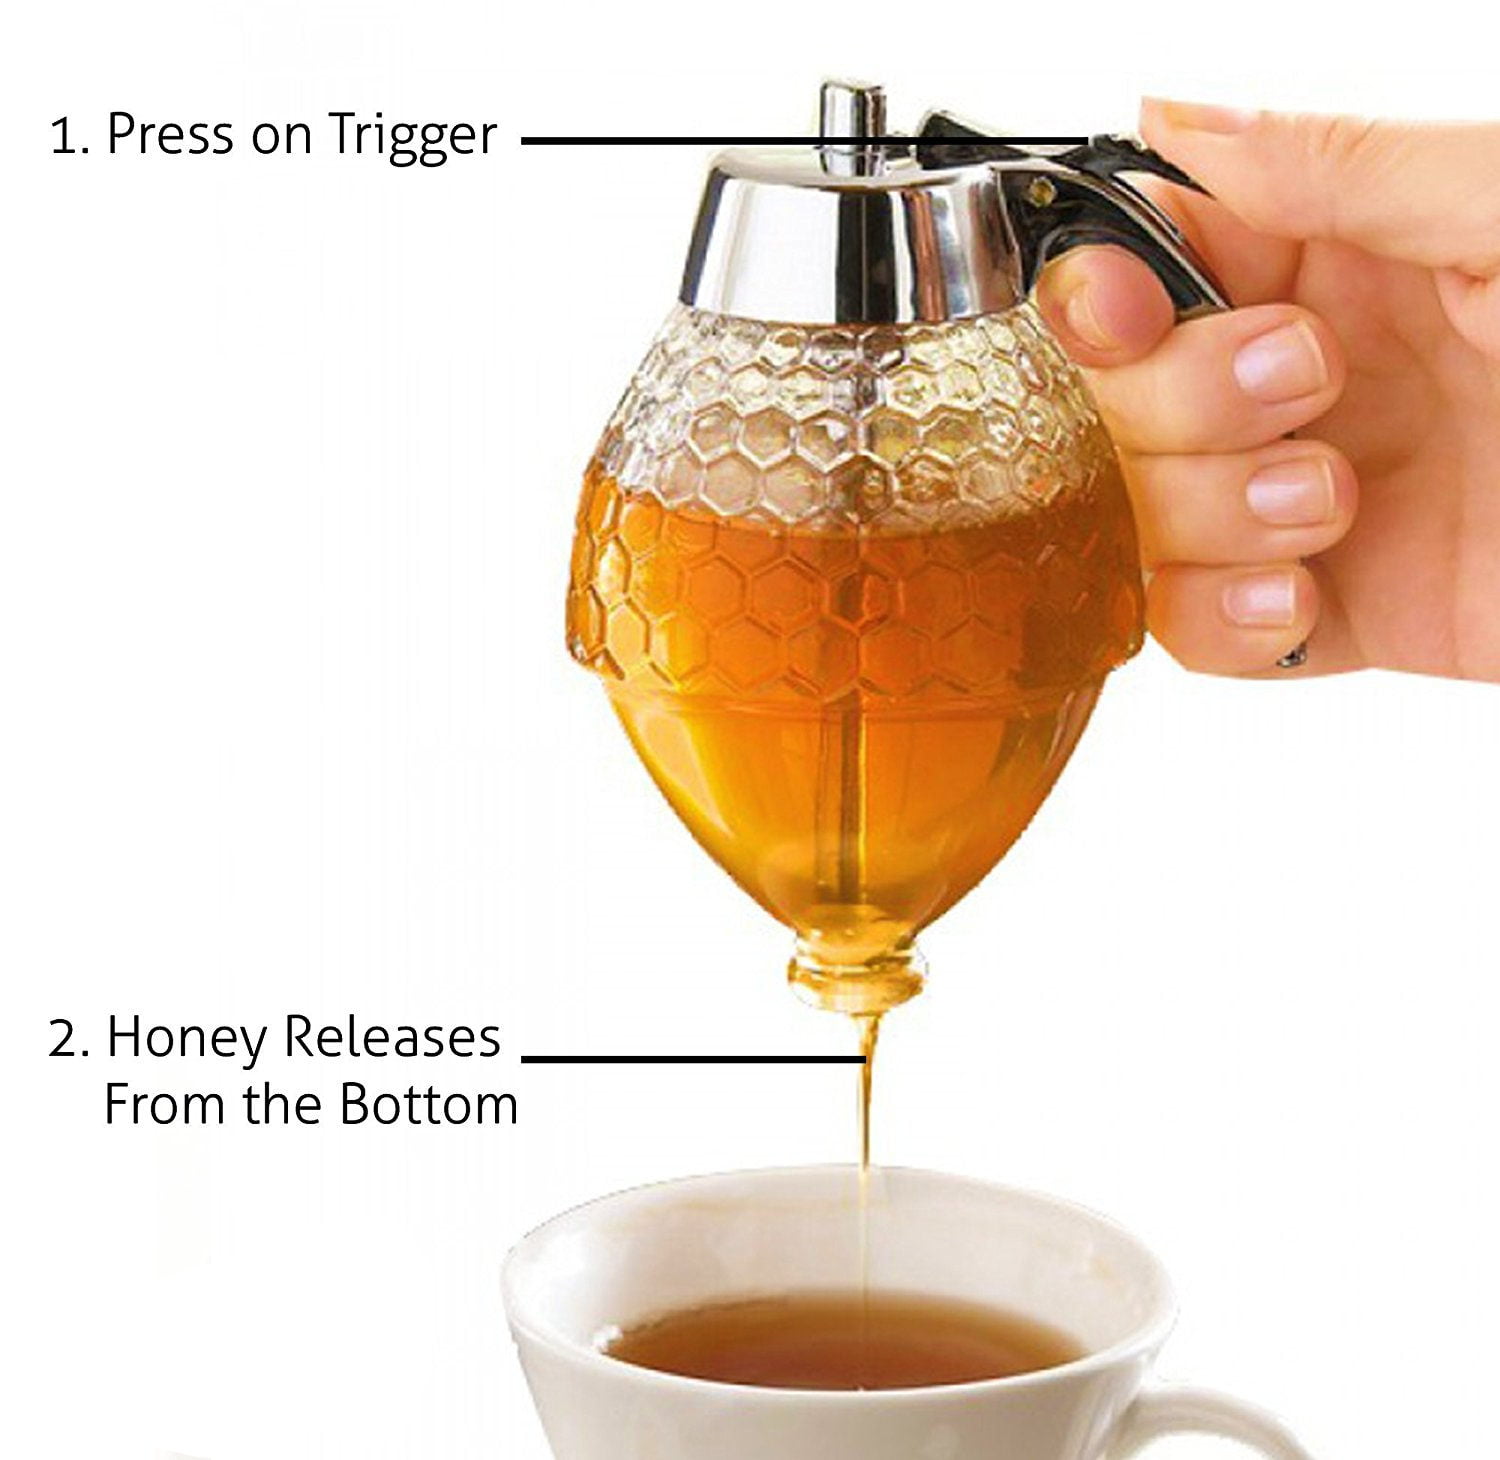 senza BPA Leegoal Honey dispenser barattolo di miele con supporto Kids friendly infrangibile sciroppo dispenser 